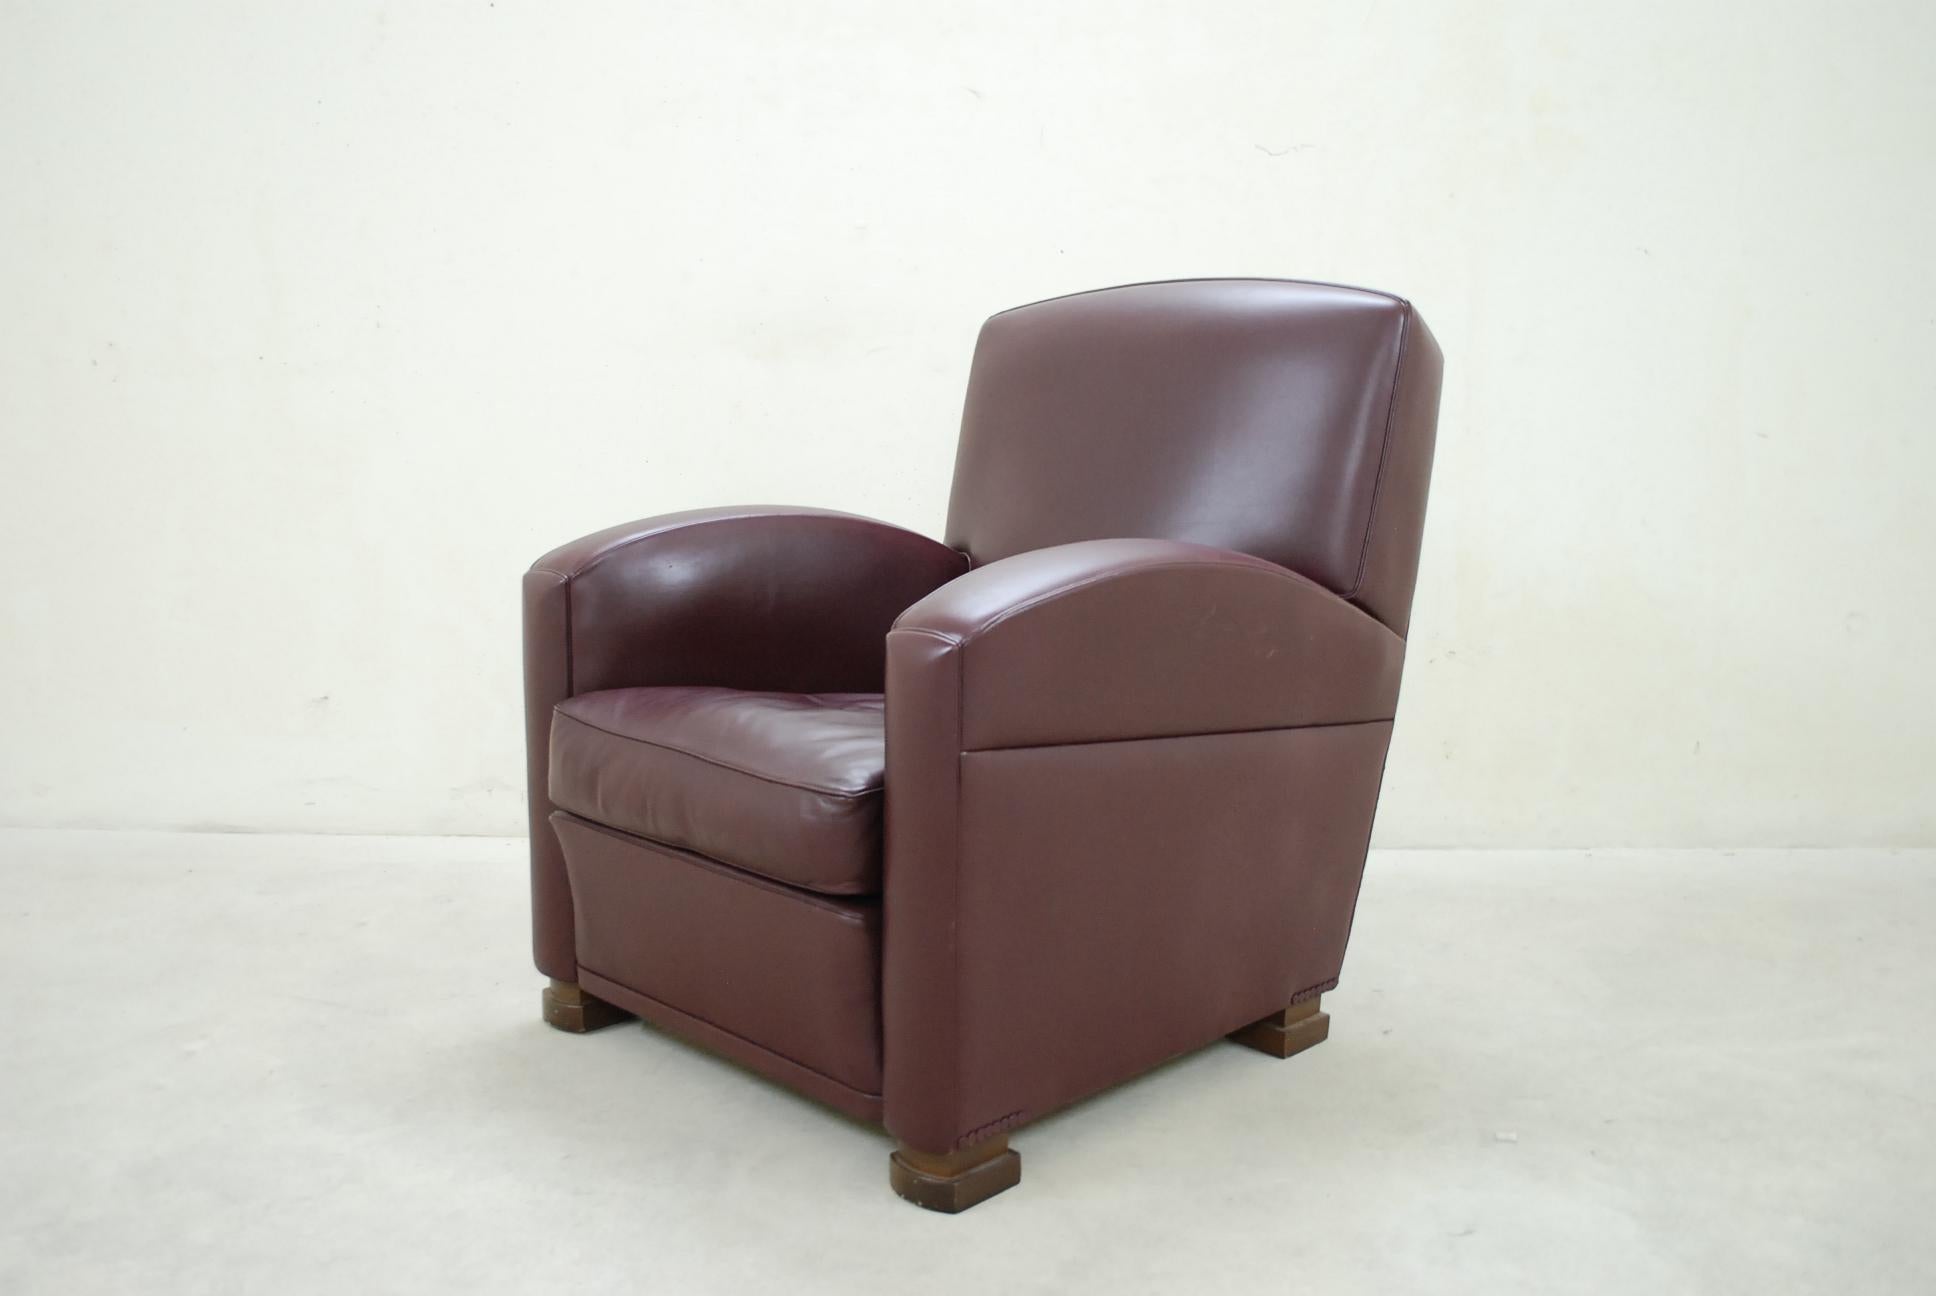 Ce fauteuil Poltrona Frau Classic modèle Tabarin est fabriqué en bordeaux rouge
Les pieds sont en hêtre foncé.
Un design classique et intemporel de l'Italie de l'ère 1930.
  